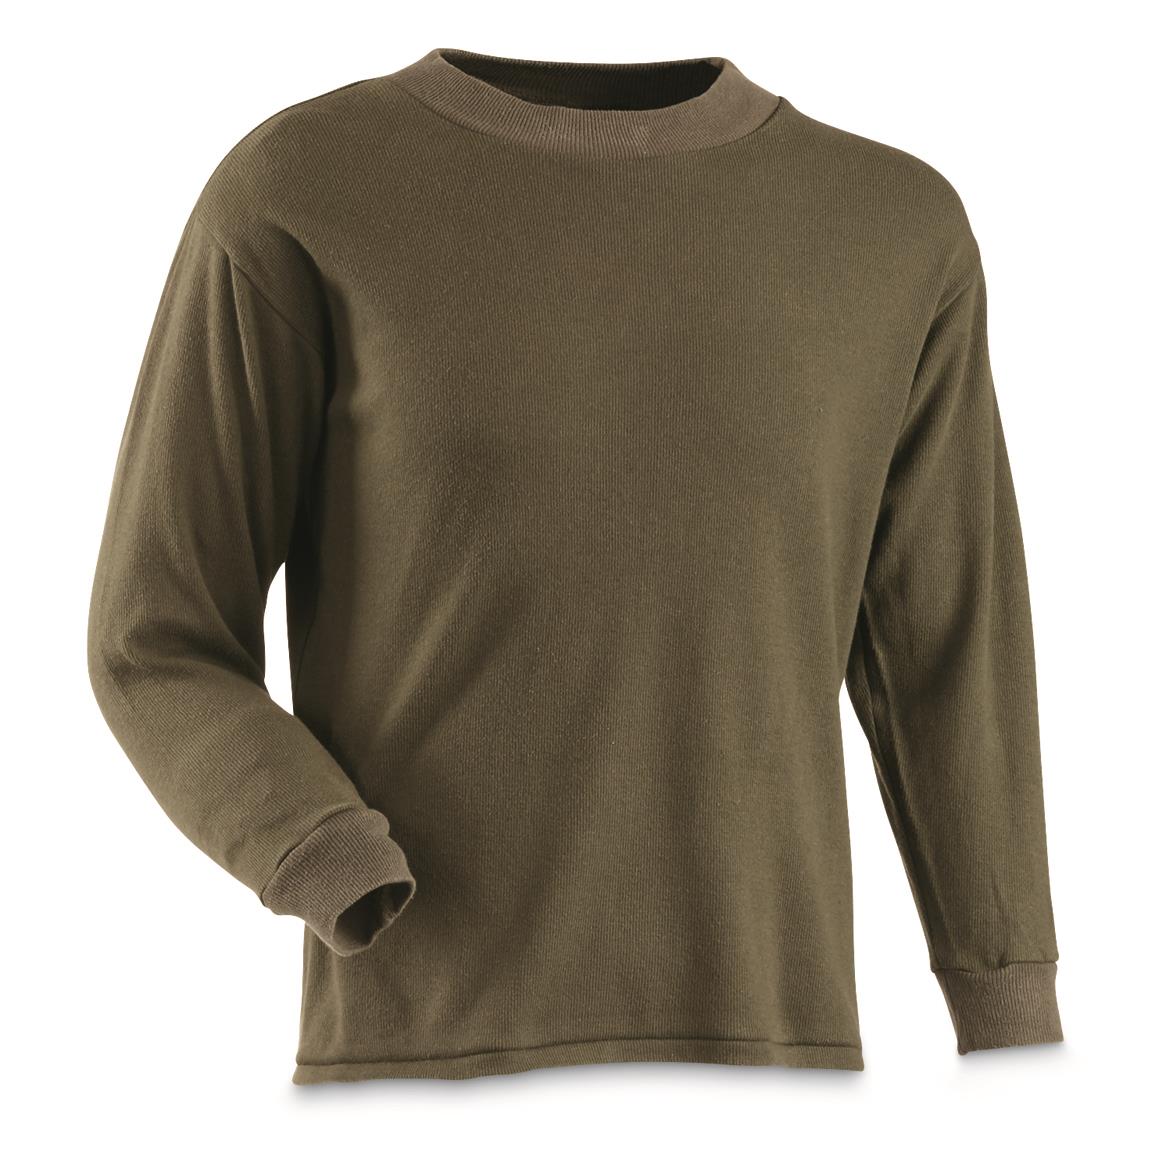 Belgian Military Surplus Wool Blend Long Sleeve Shirt, 3 Pack, Used